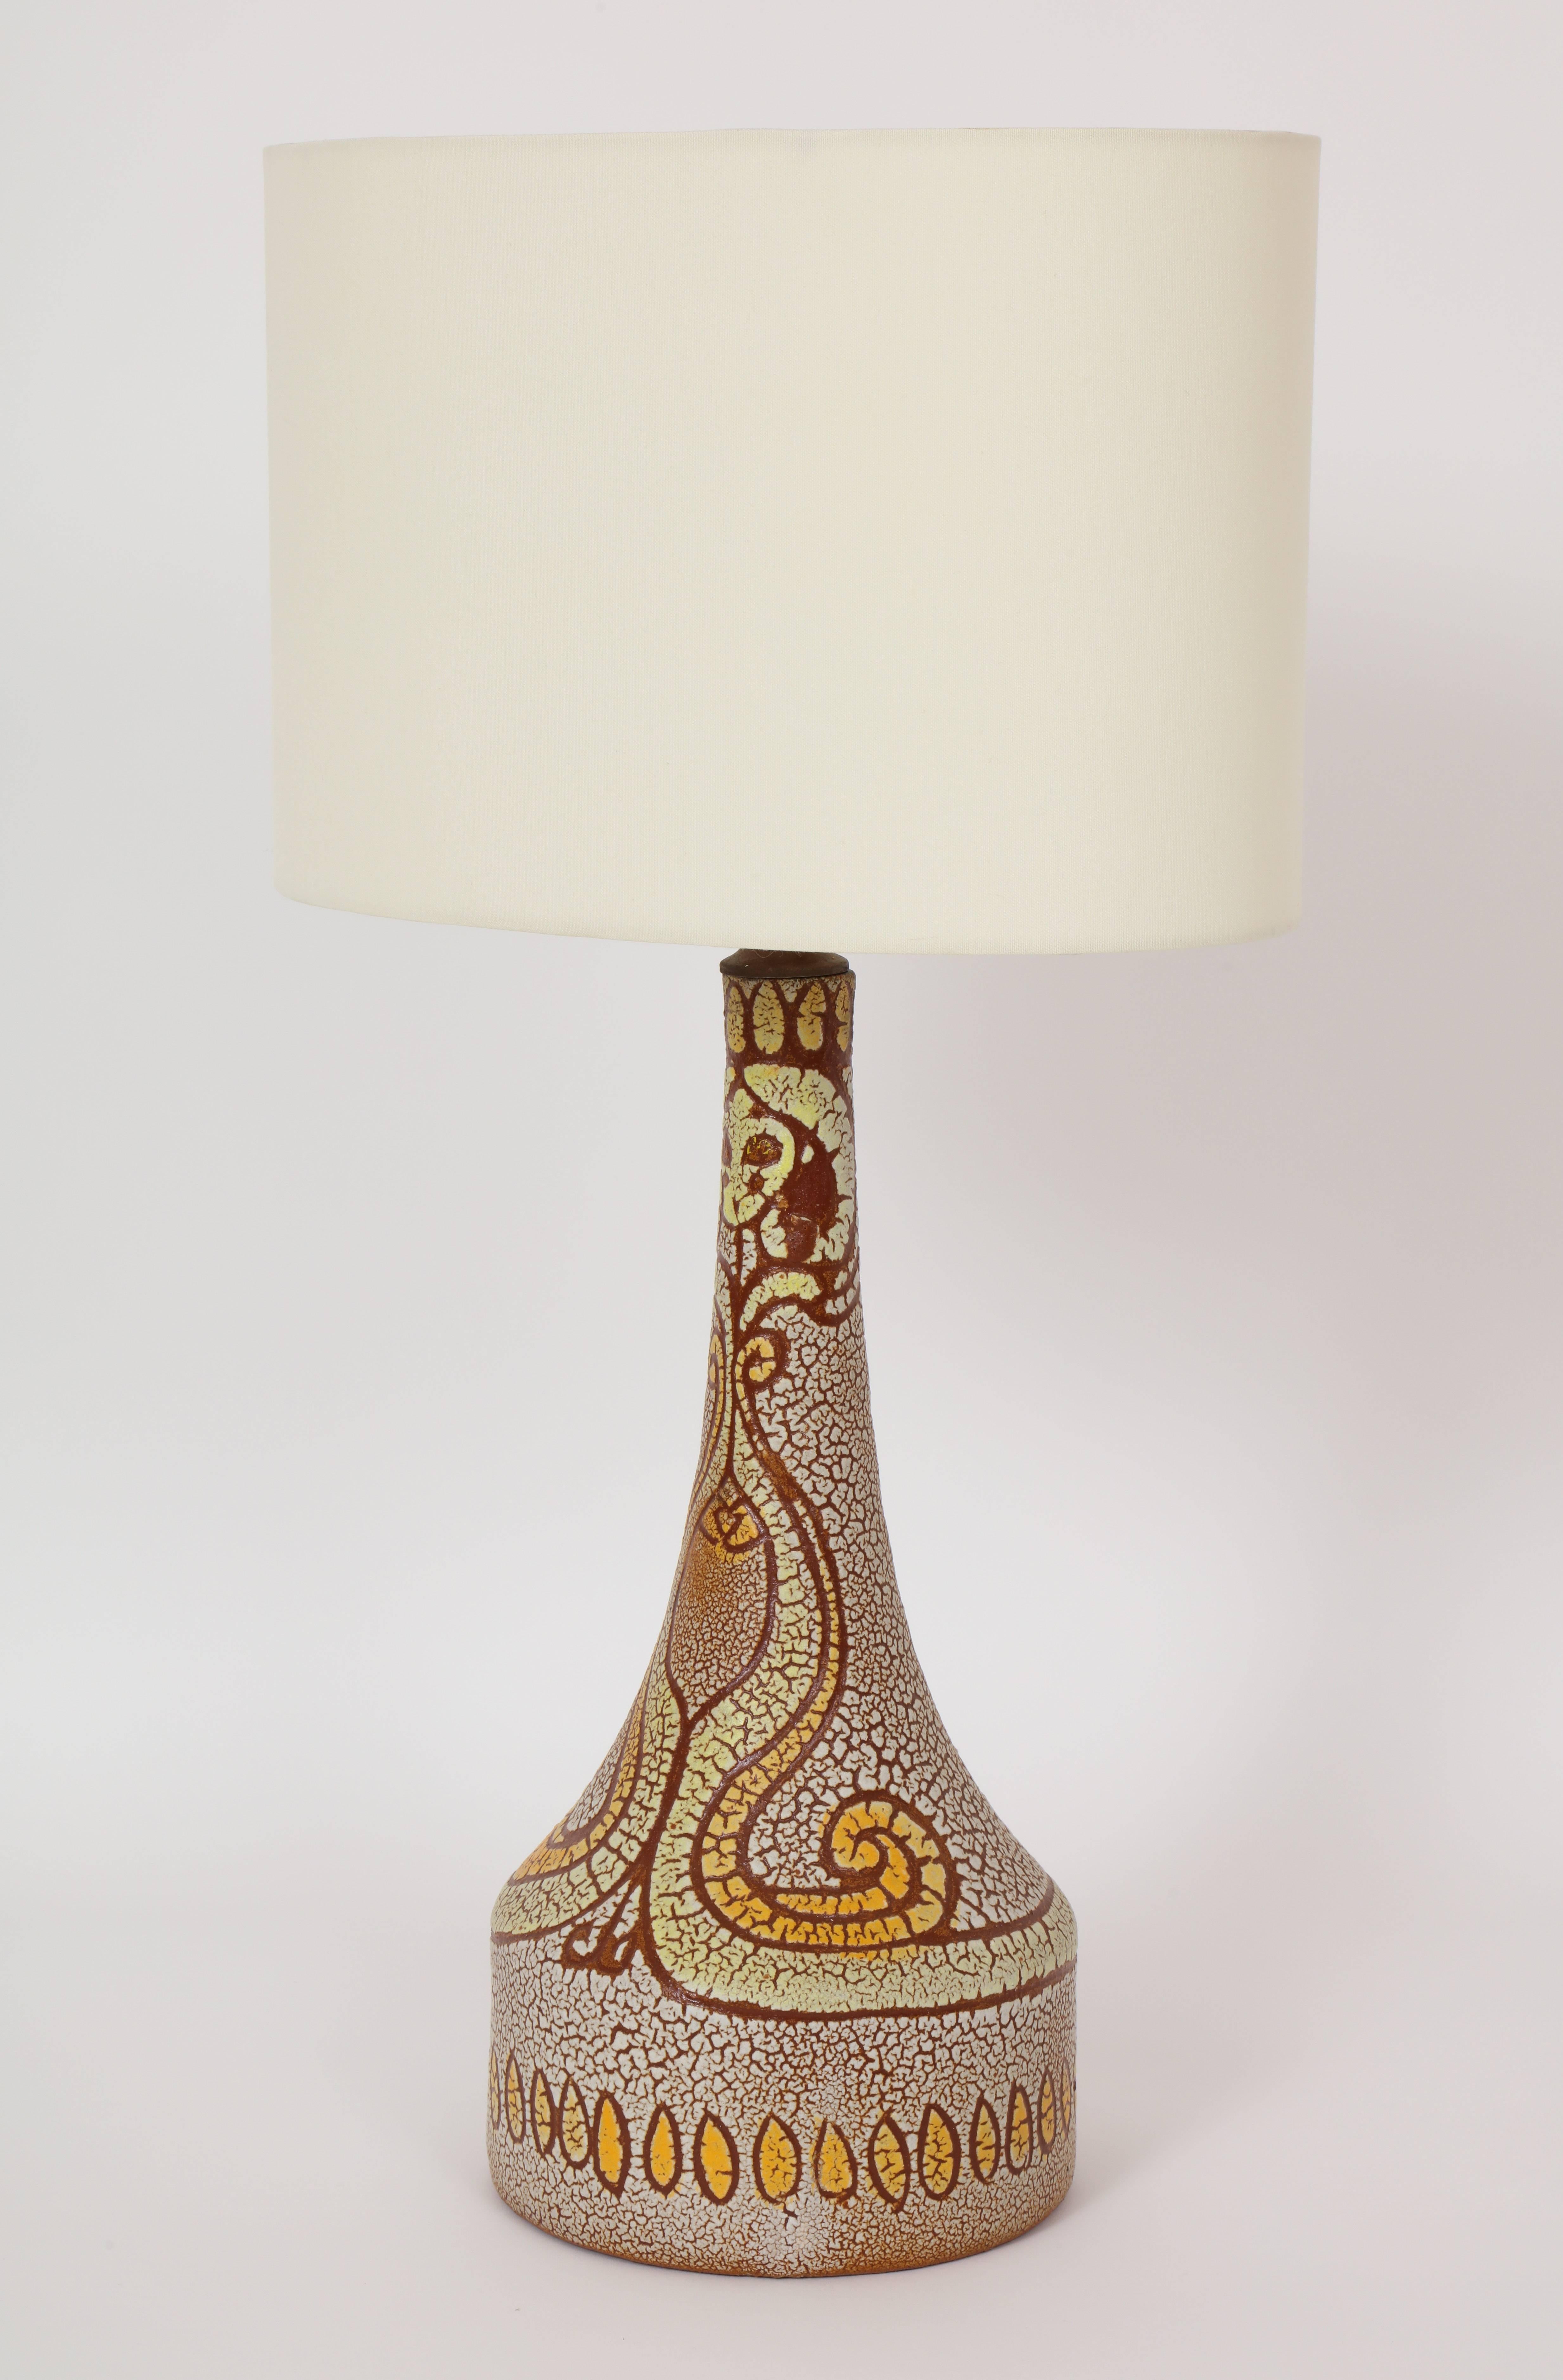 Mitte des Jahrhunderts accolay zugeschrieben gelb, orange, braun Keramik-Lampe, 1950 Frankreich mit einem Gesicht Design
Hübsche Keramiklampe, ca. 1950er Jahre.
16 Zoll bis zur Oberkante der Keramik,
25.5 Zoll bis zur Spitze mit Schatten,
7 Zoll